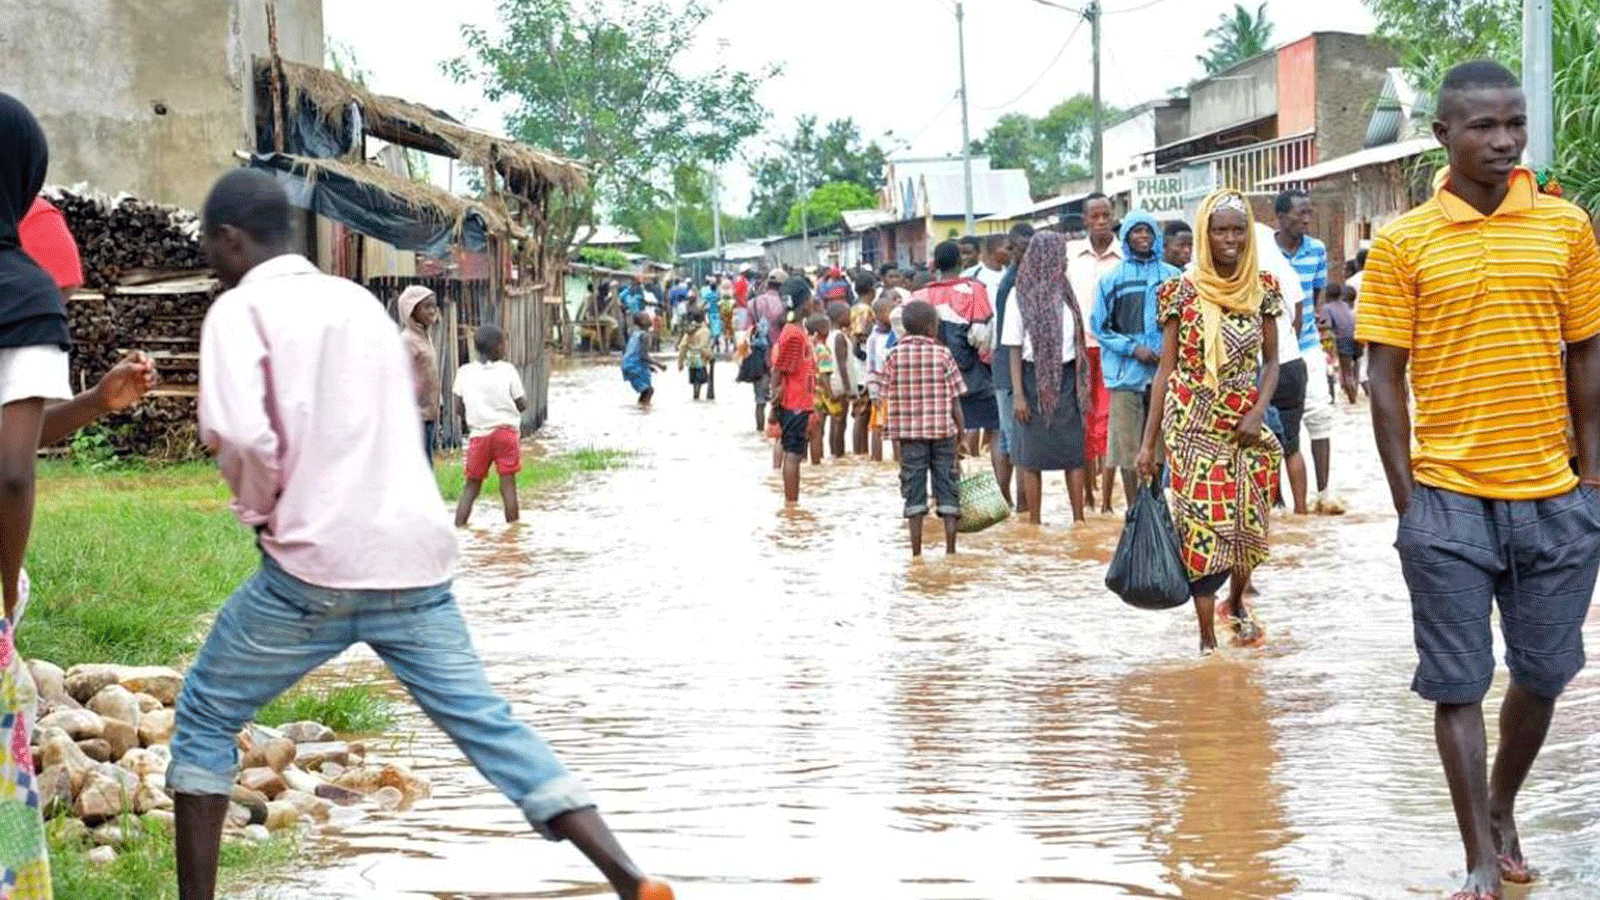 أشخاص يسيرون حفاة في شارع غمرته المياه في بوروندي في 17 آذار/مارس 2017